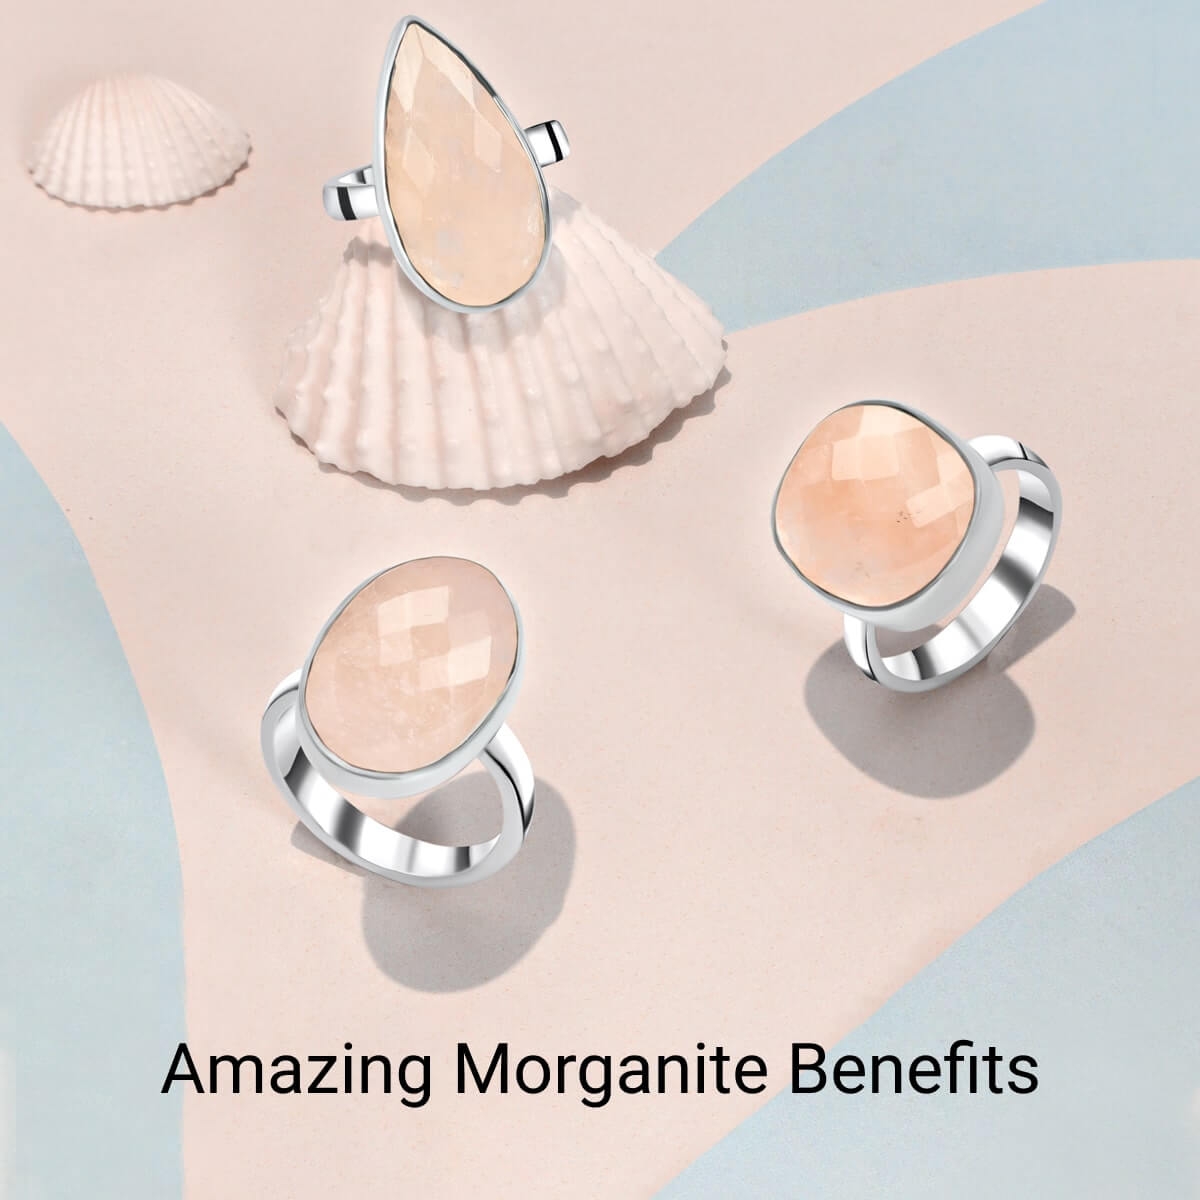 Morganite Benefit